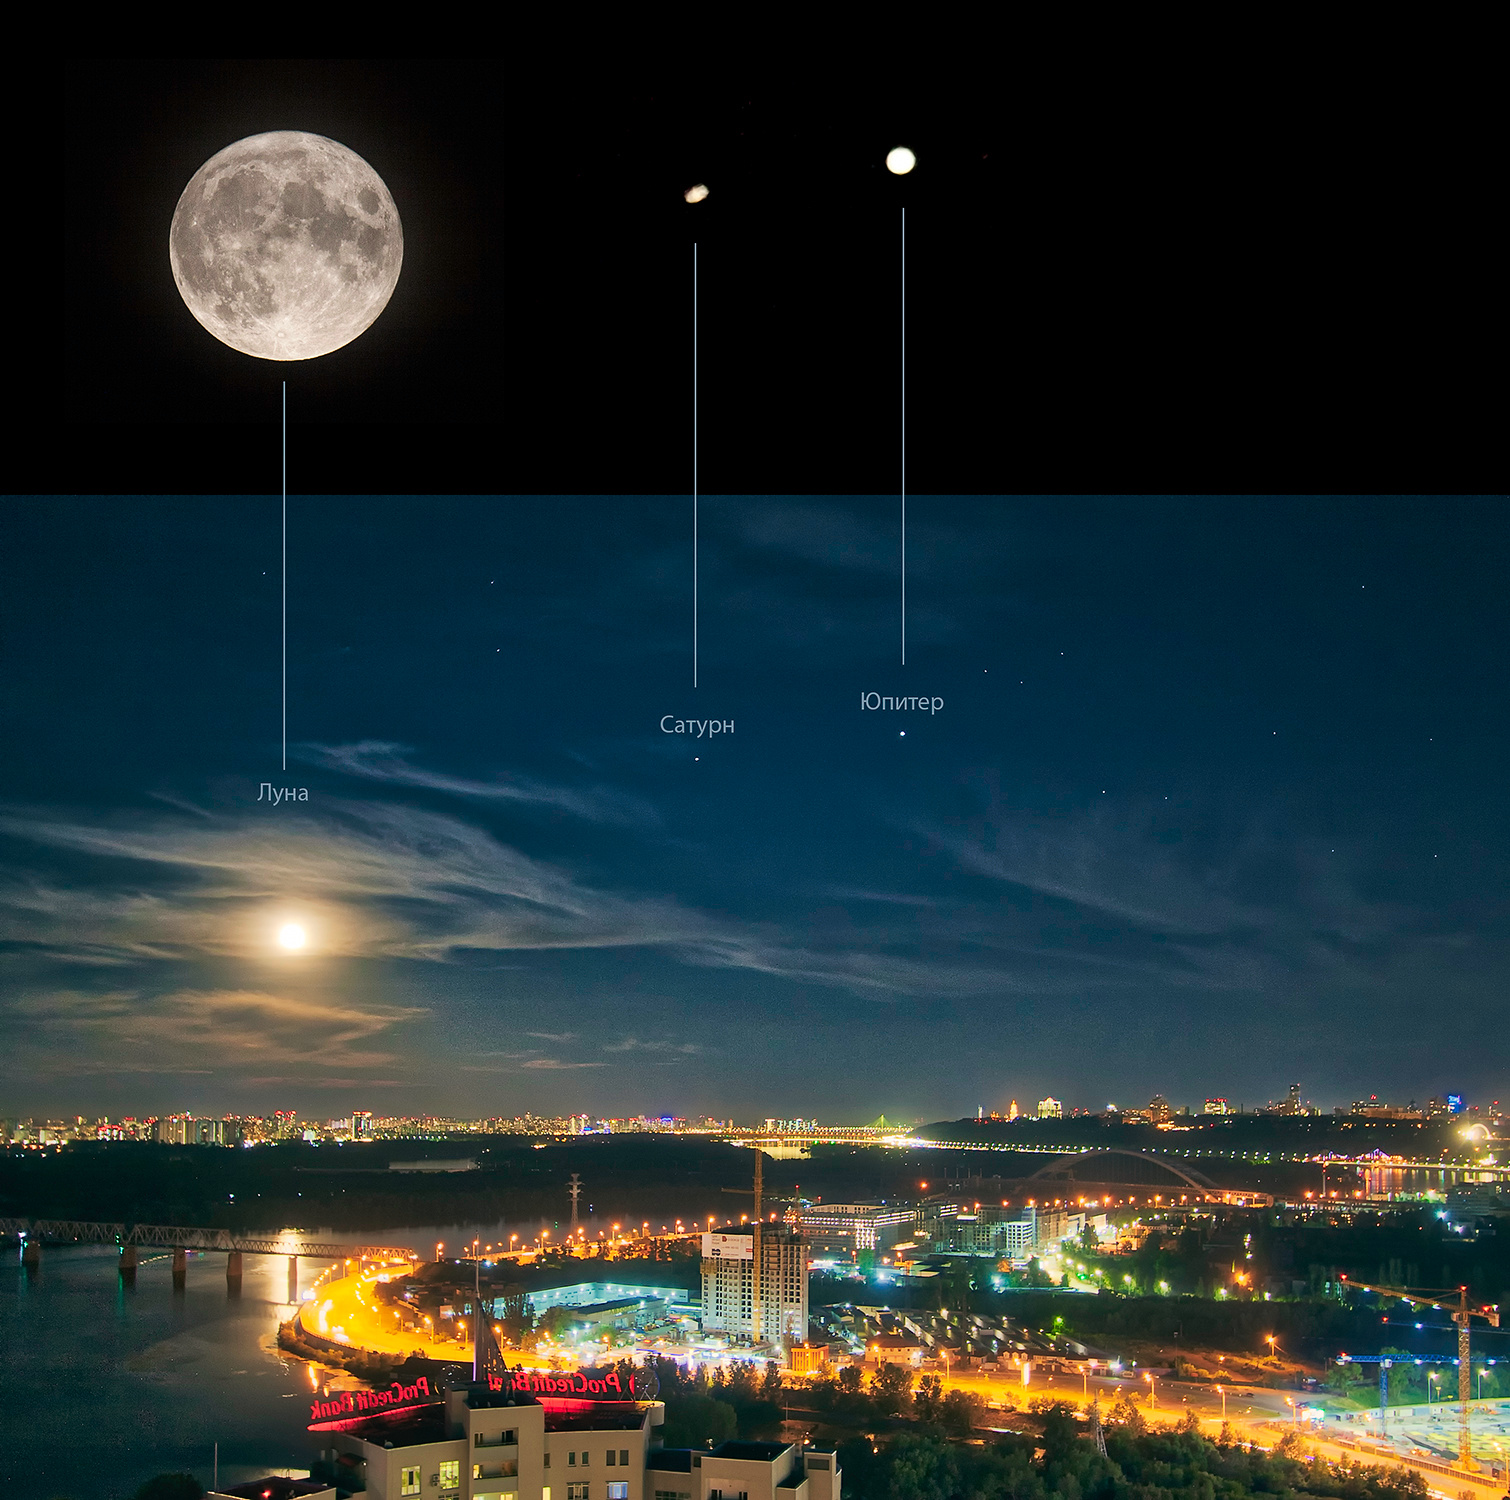 Вечерний Киев_2 ночной пейзаж ночное небо Киев город звездное звезды Луна Юпитер Сатурн